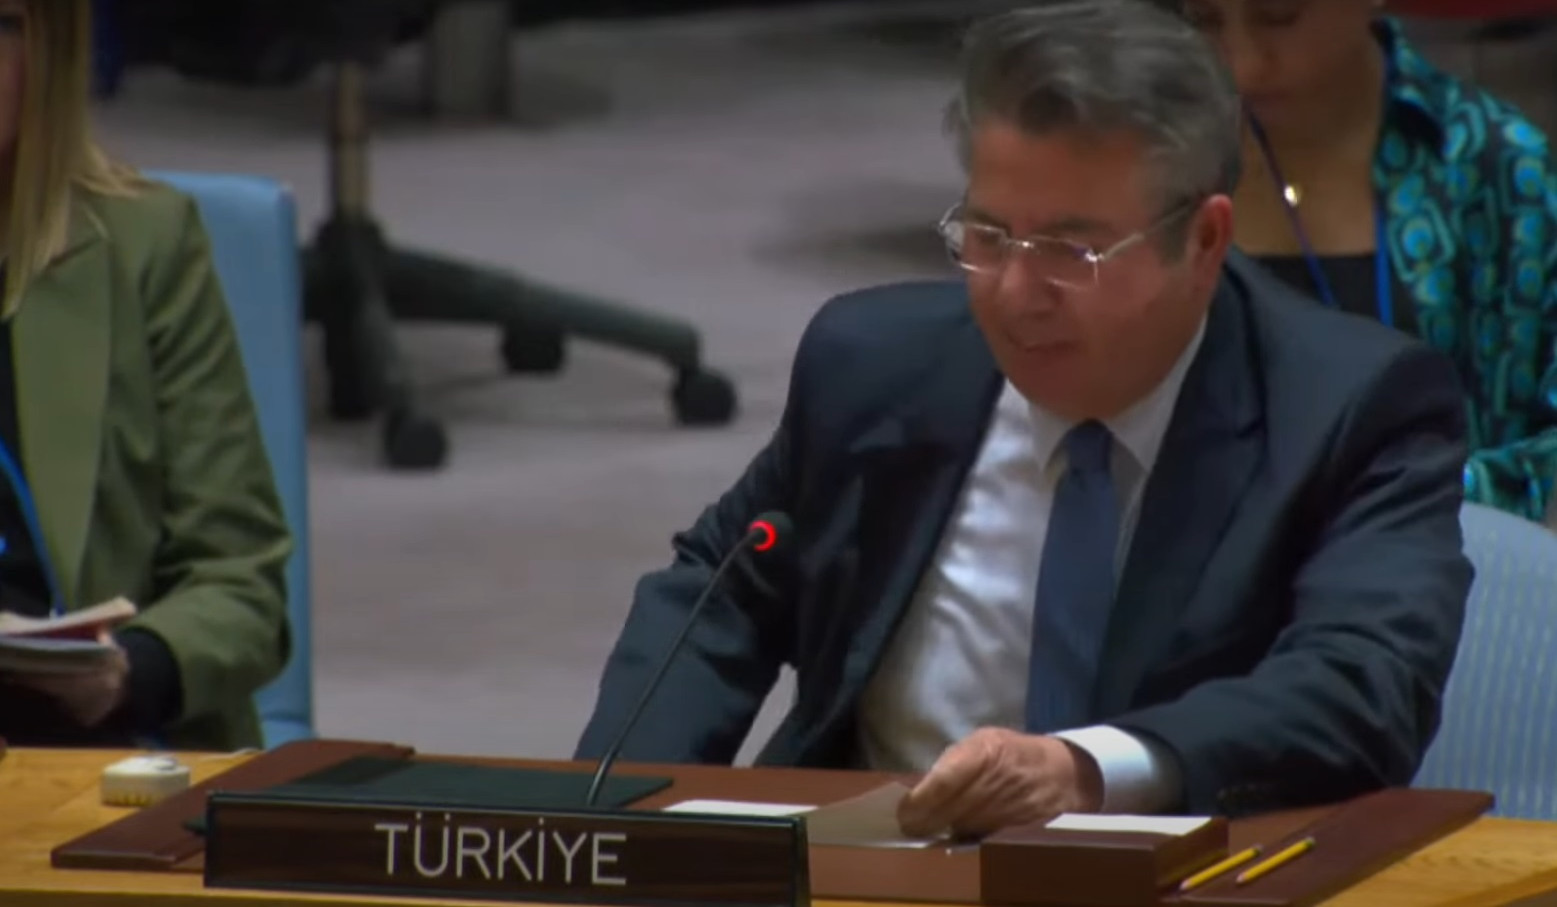 Թուրքիան մտահոգված է Հայաստանի փորձերով՝ չարաշահելու միջազգային հարթակները․ ՄԱԿ-ում Թուրքիայի ներկայացուցիչ